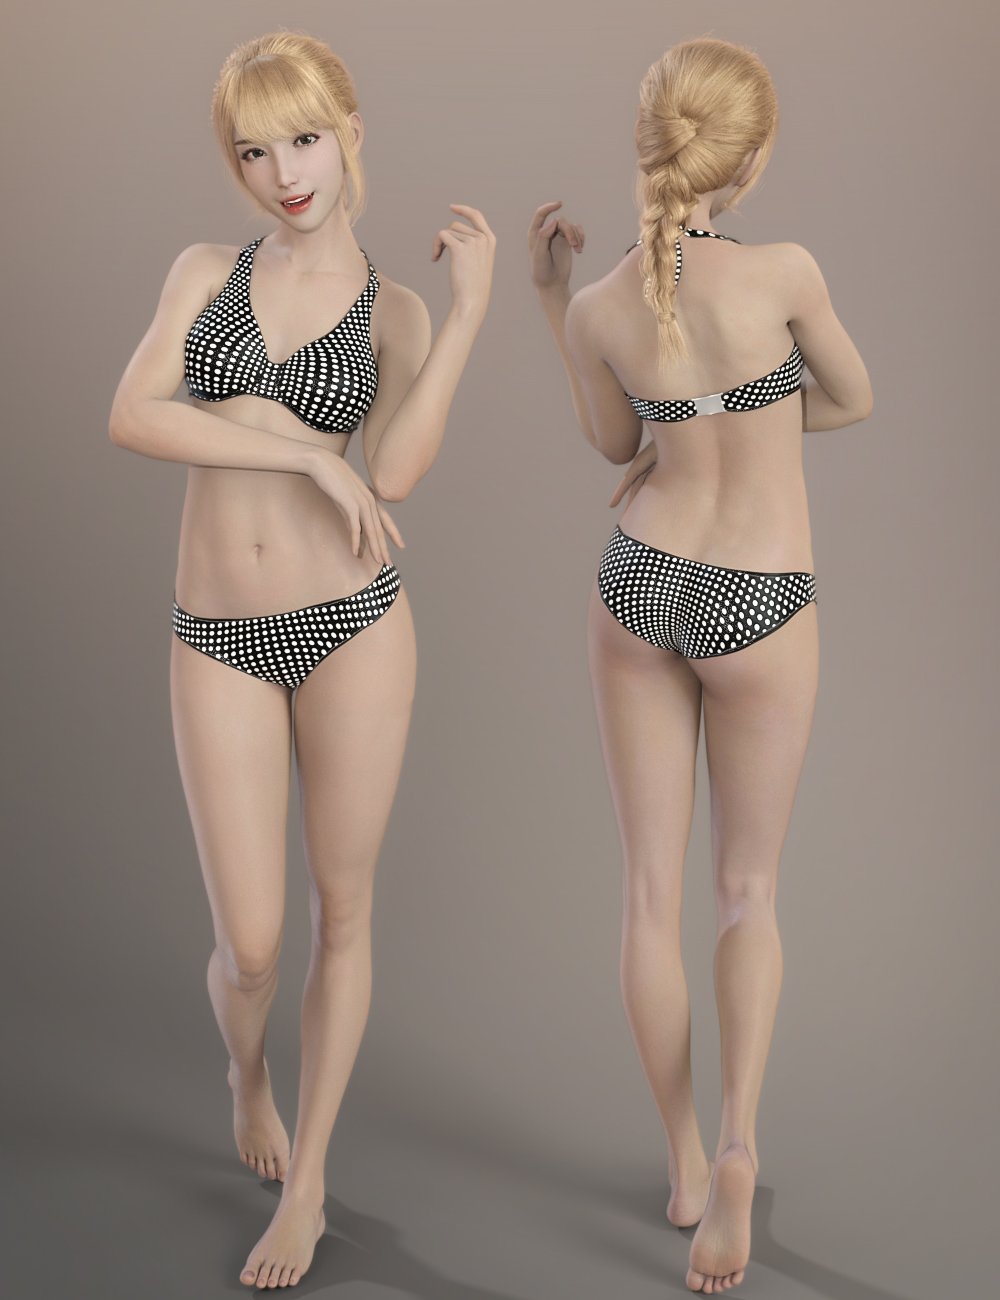 Gu Yu and Gu Yu Hair for Genesis 8.1 Female by: Crocodile Liu, 3D Models by Daz 3D